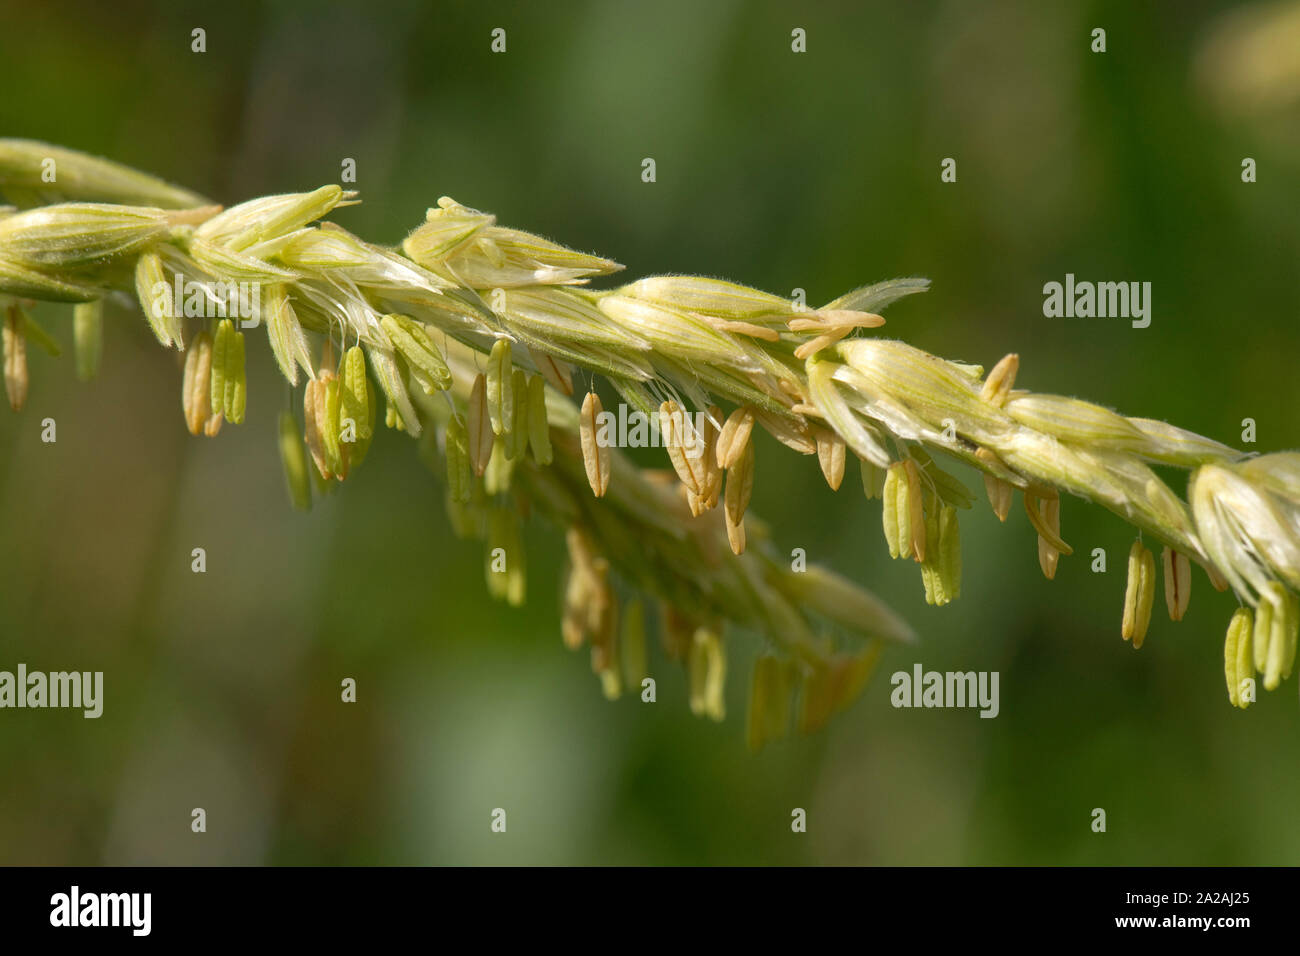 Maïs doux ou du maïs (Zea mays) ouvrir la floraison mâle glands avec anthères exposés et l'excrétion du pollen, Berkshire, Août Banque D'Images